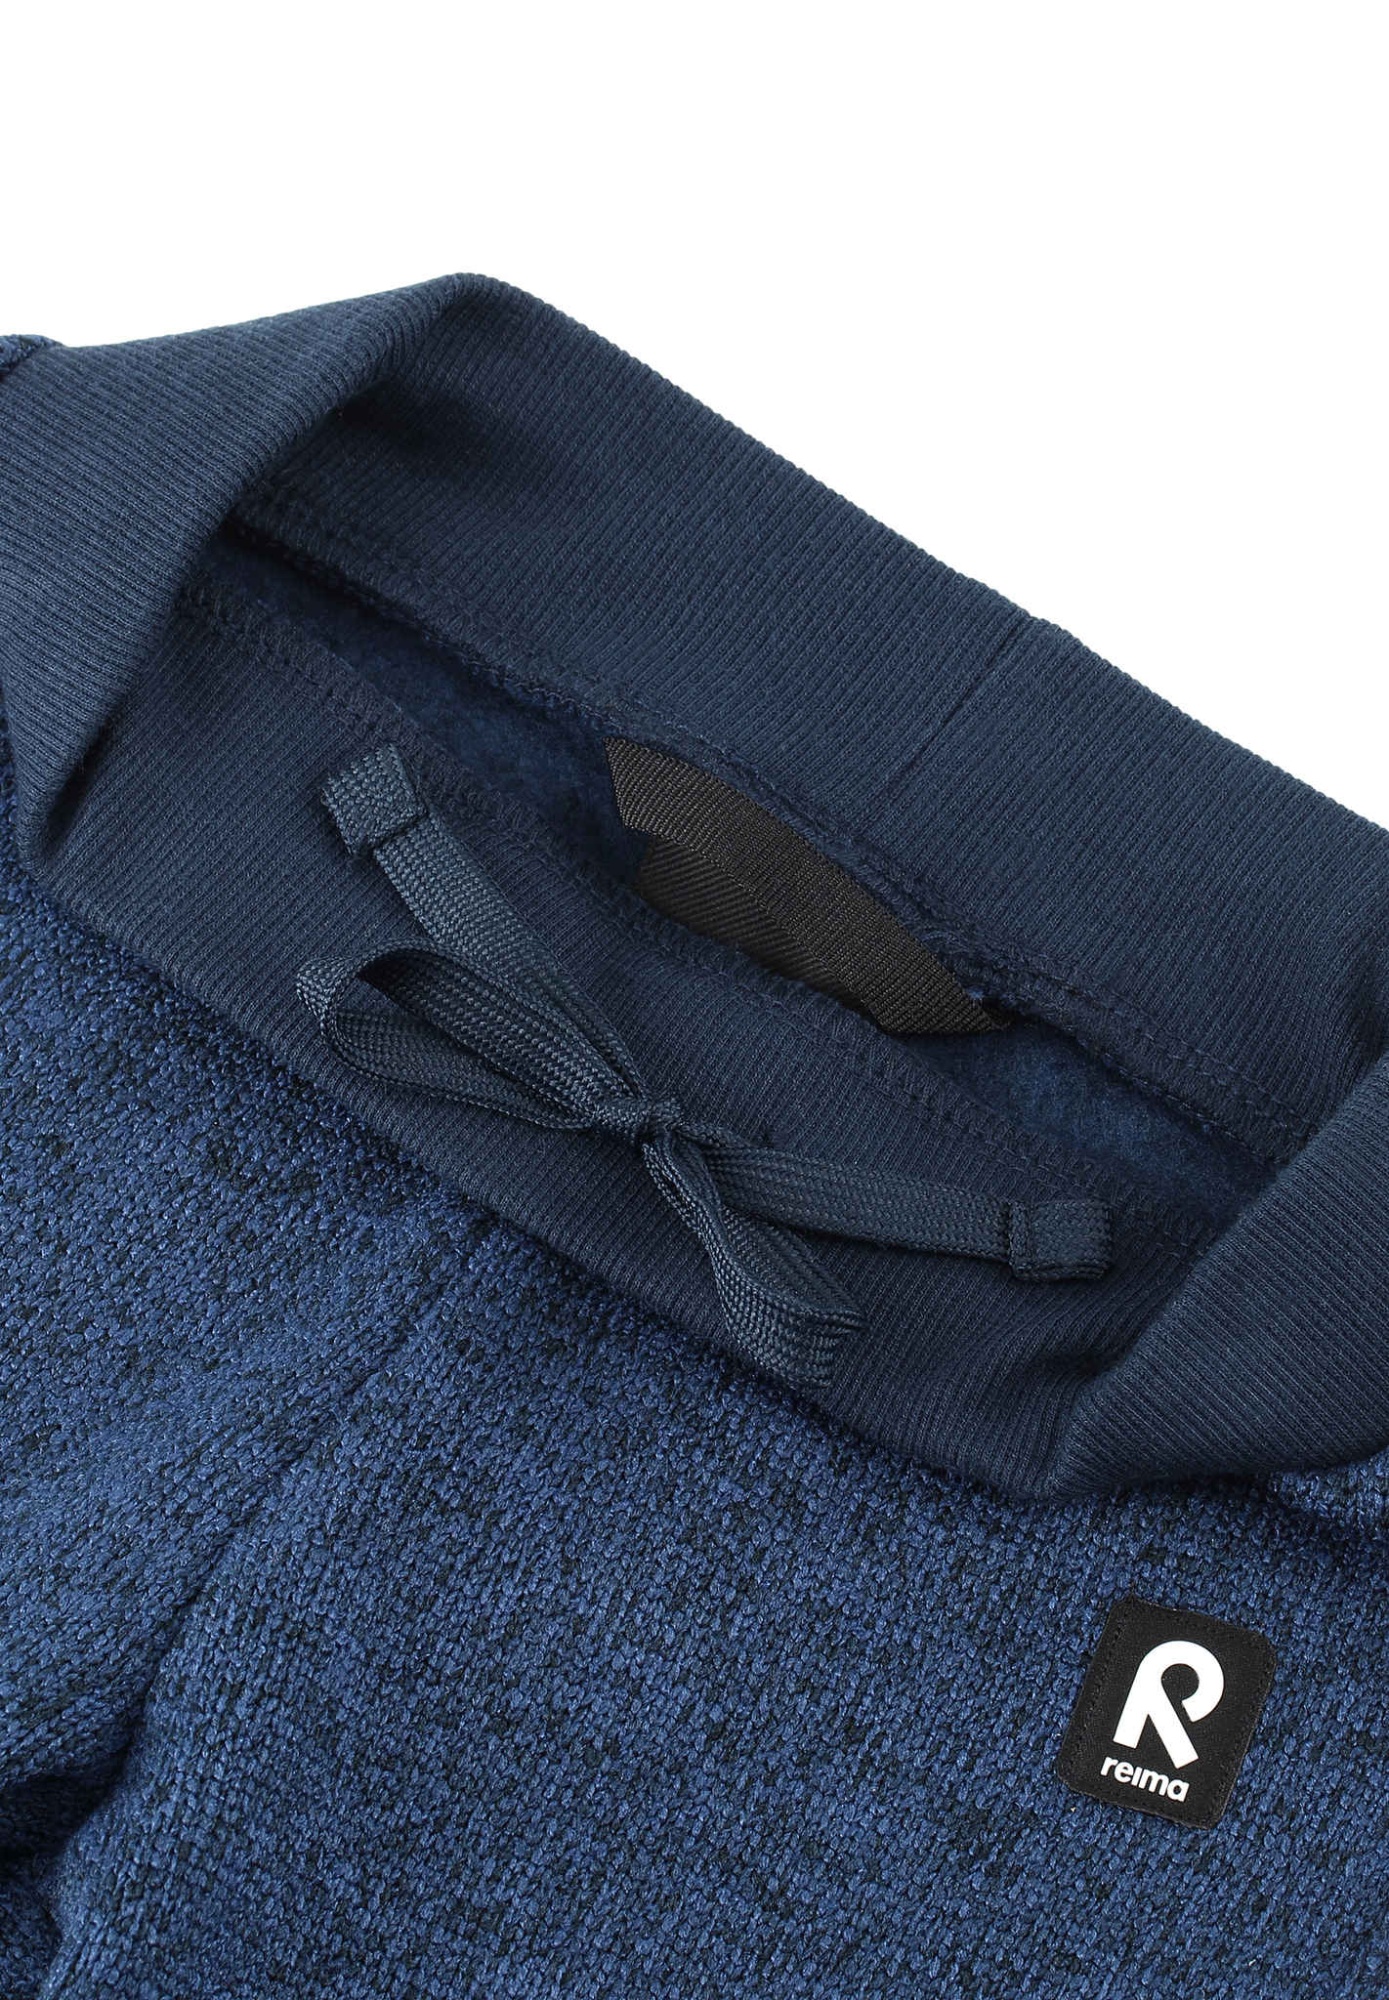 Флисовые брюки Vuotos Синие | фото